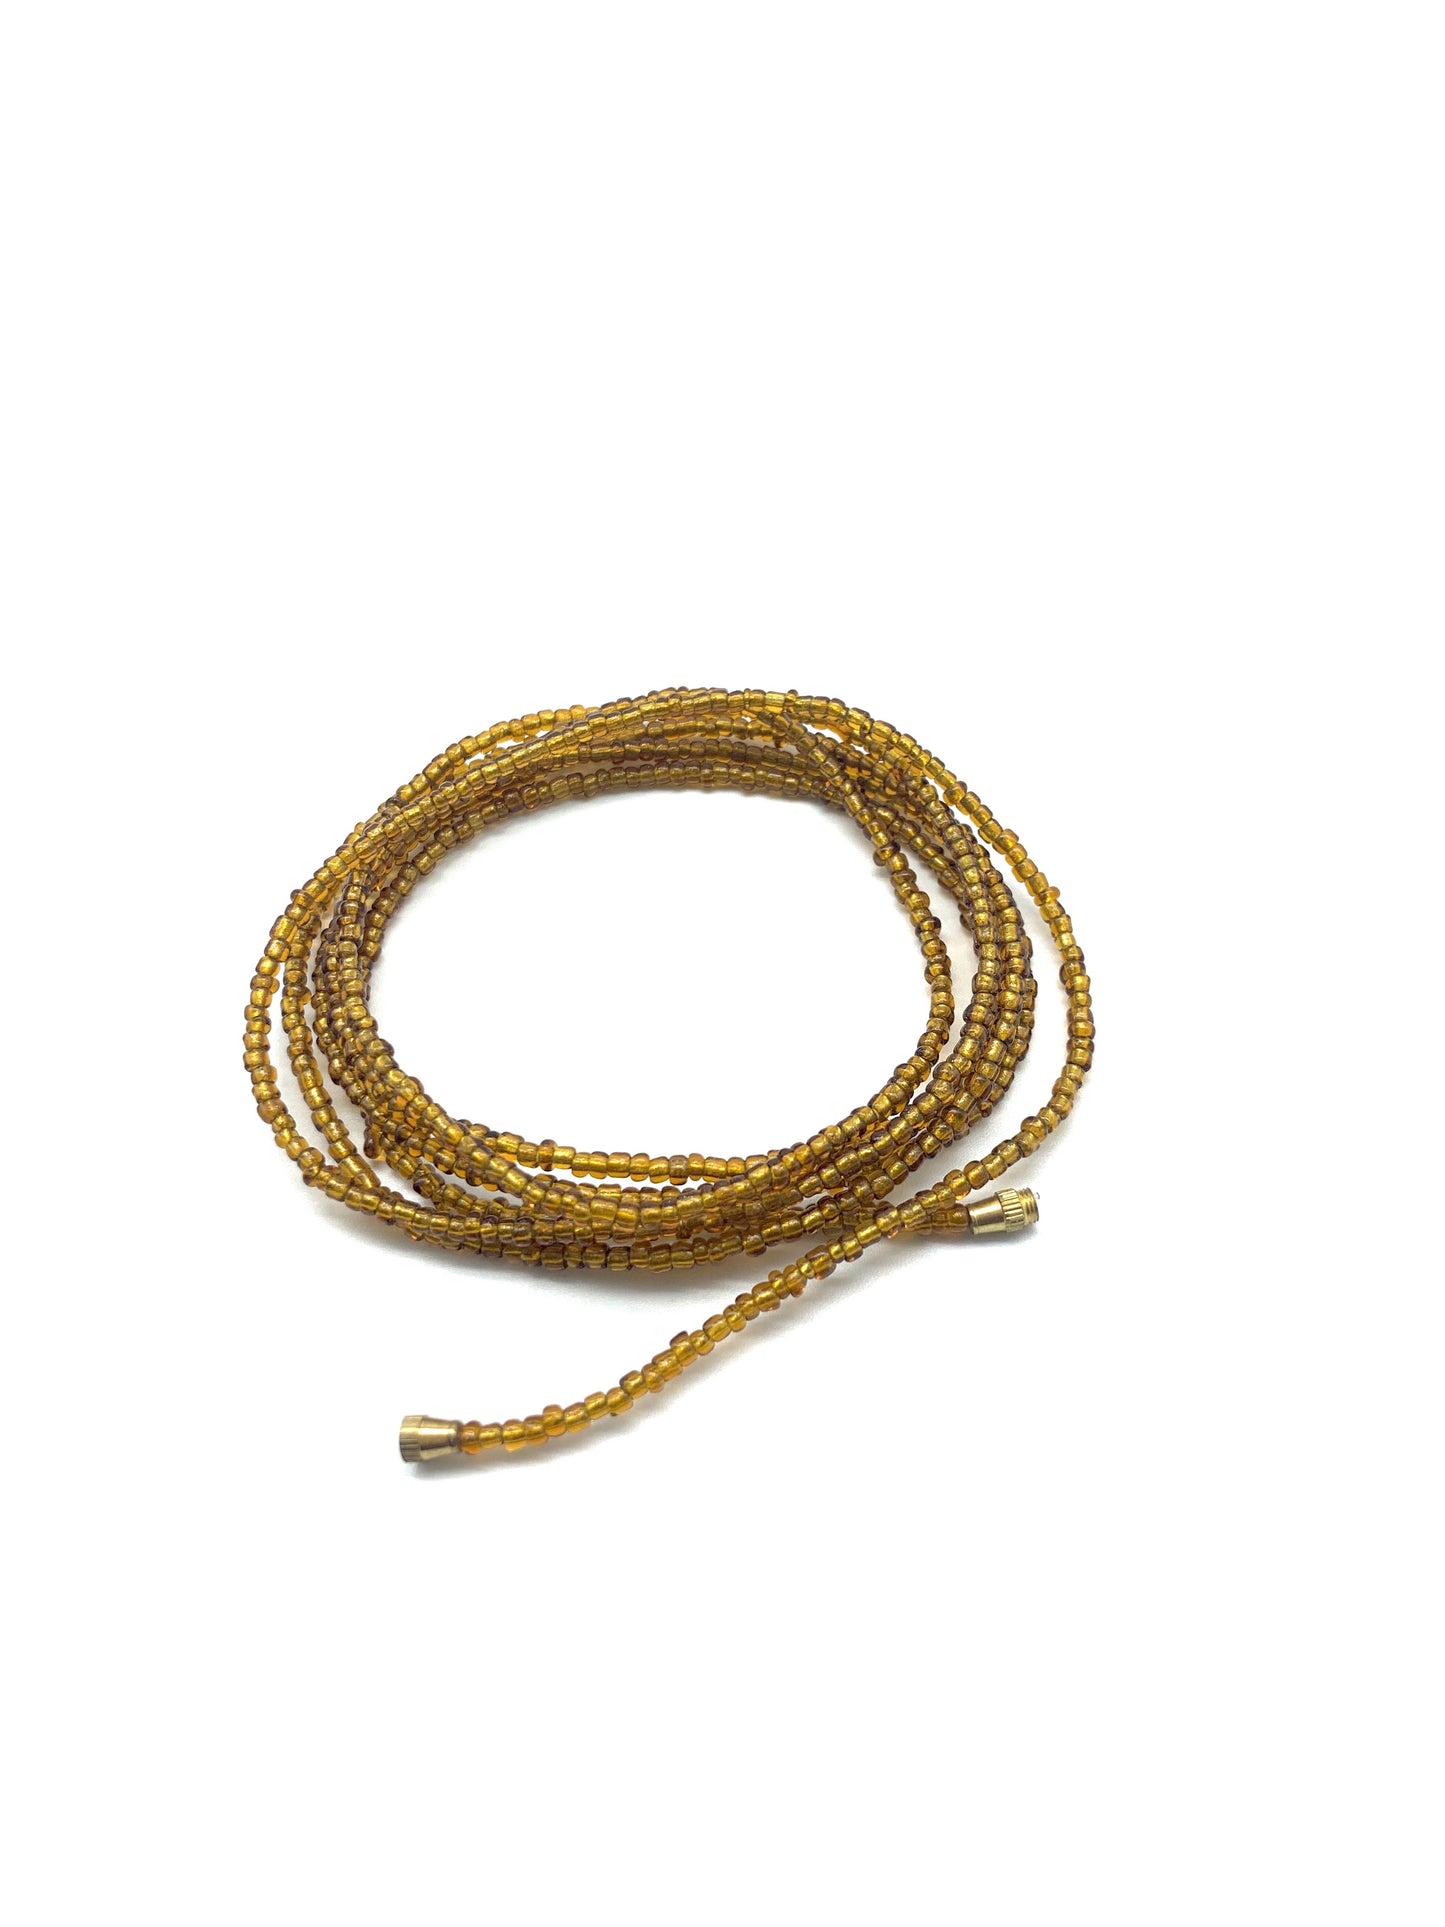 Hazel & Gold! African Waist Beads / Necklace / Bracelet / Anklet